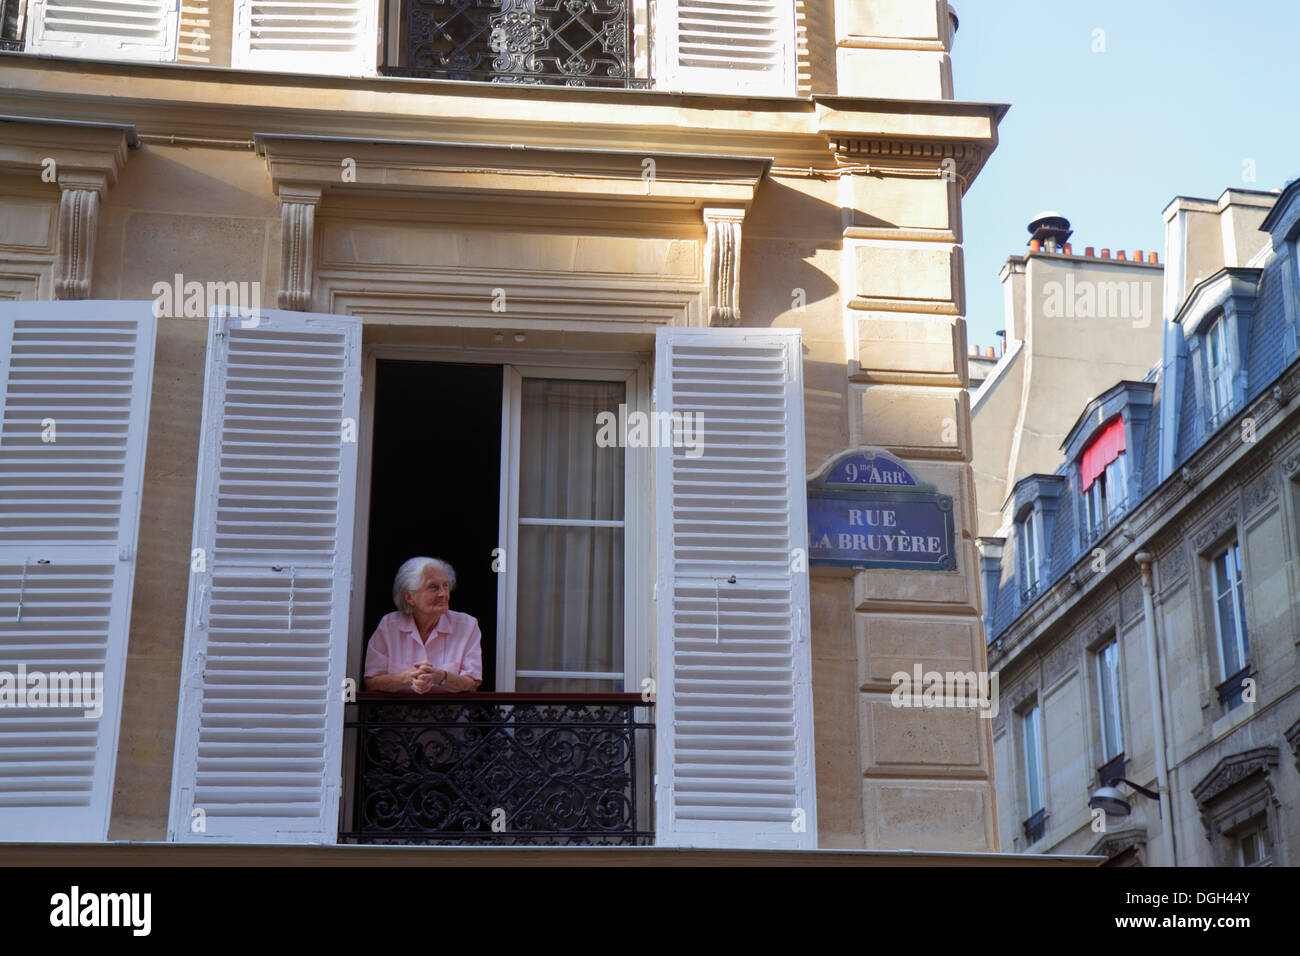 Paris France,9th arrondissement,Rue La Bruyere,senior seniors citizen citizens,adult,adults,woman female women,window,shutters,historic Haussmann cond Stock Photo